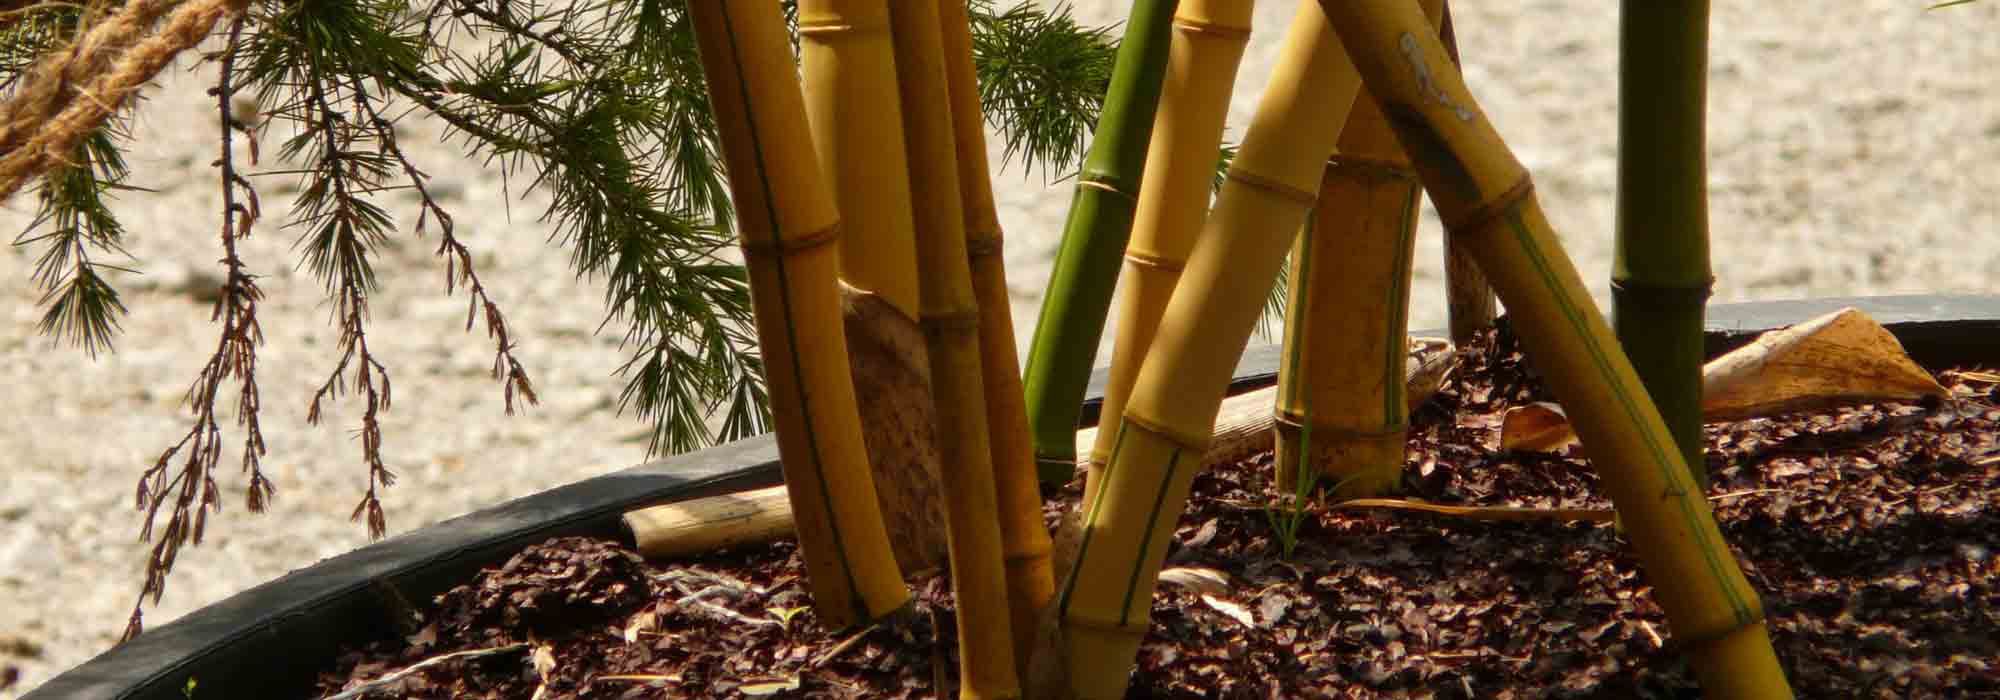 Bambou AUREA en pot de 26 cm de diamètre